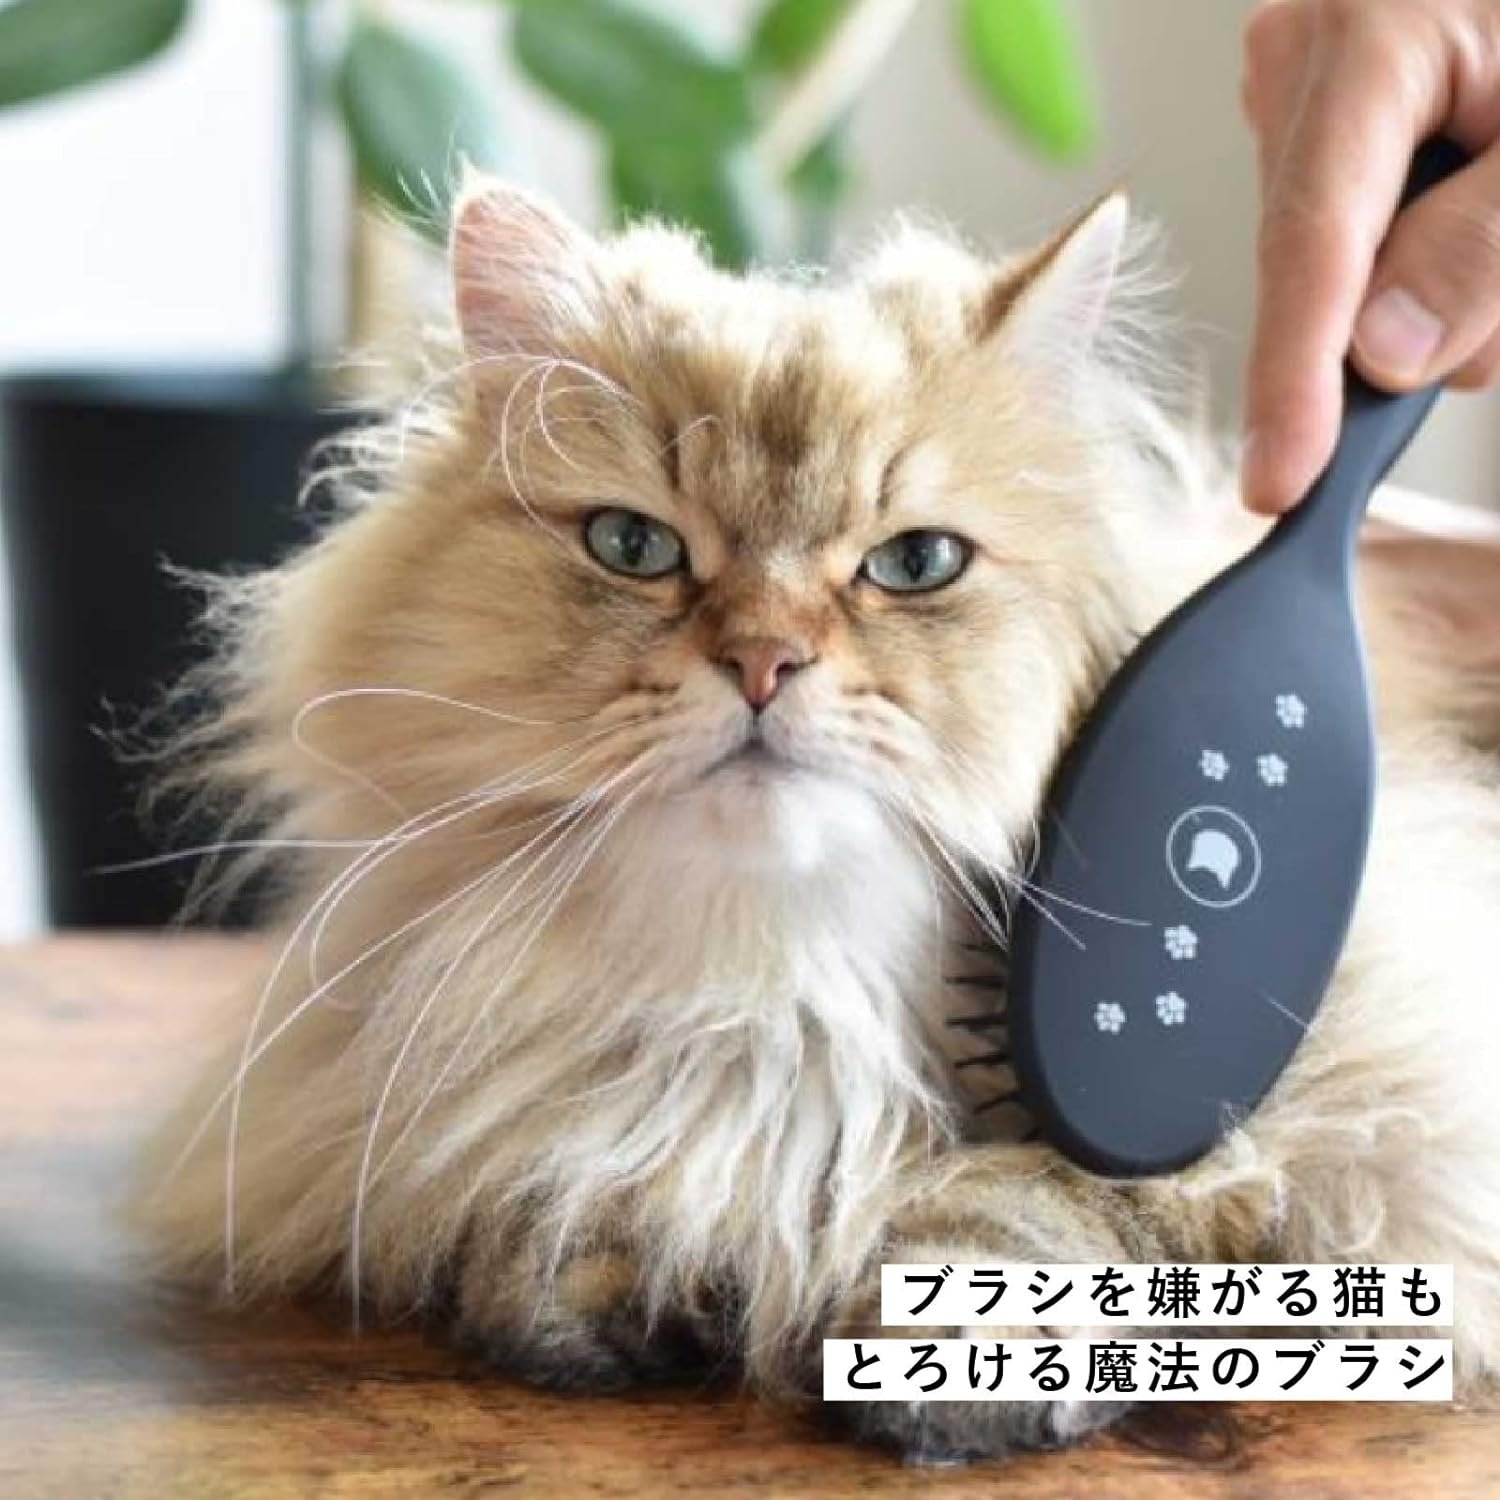 日本制造猫壱魔法梳子软触针+远红外线效果保护毛发